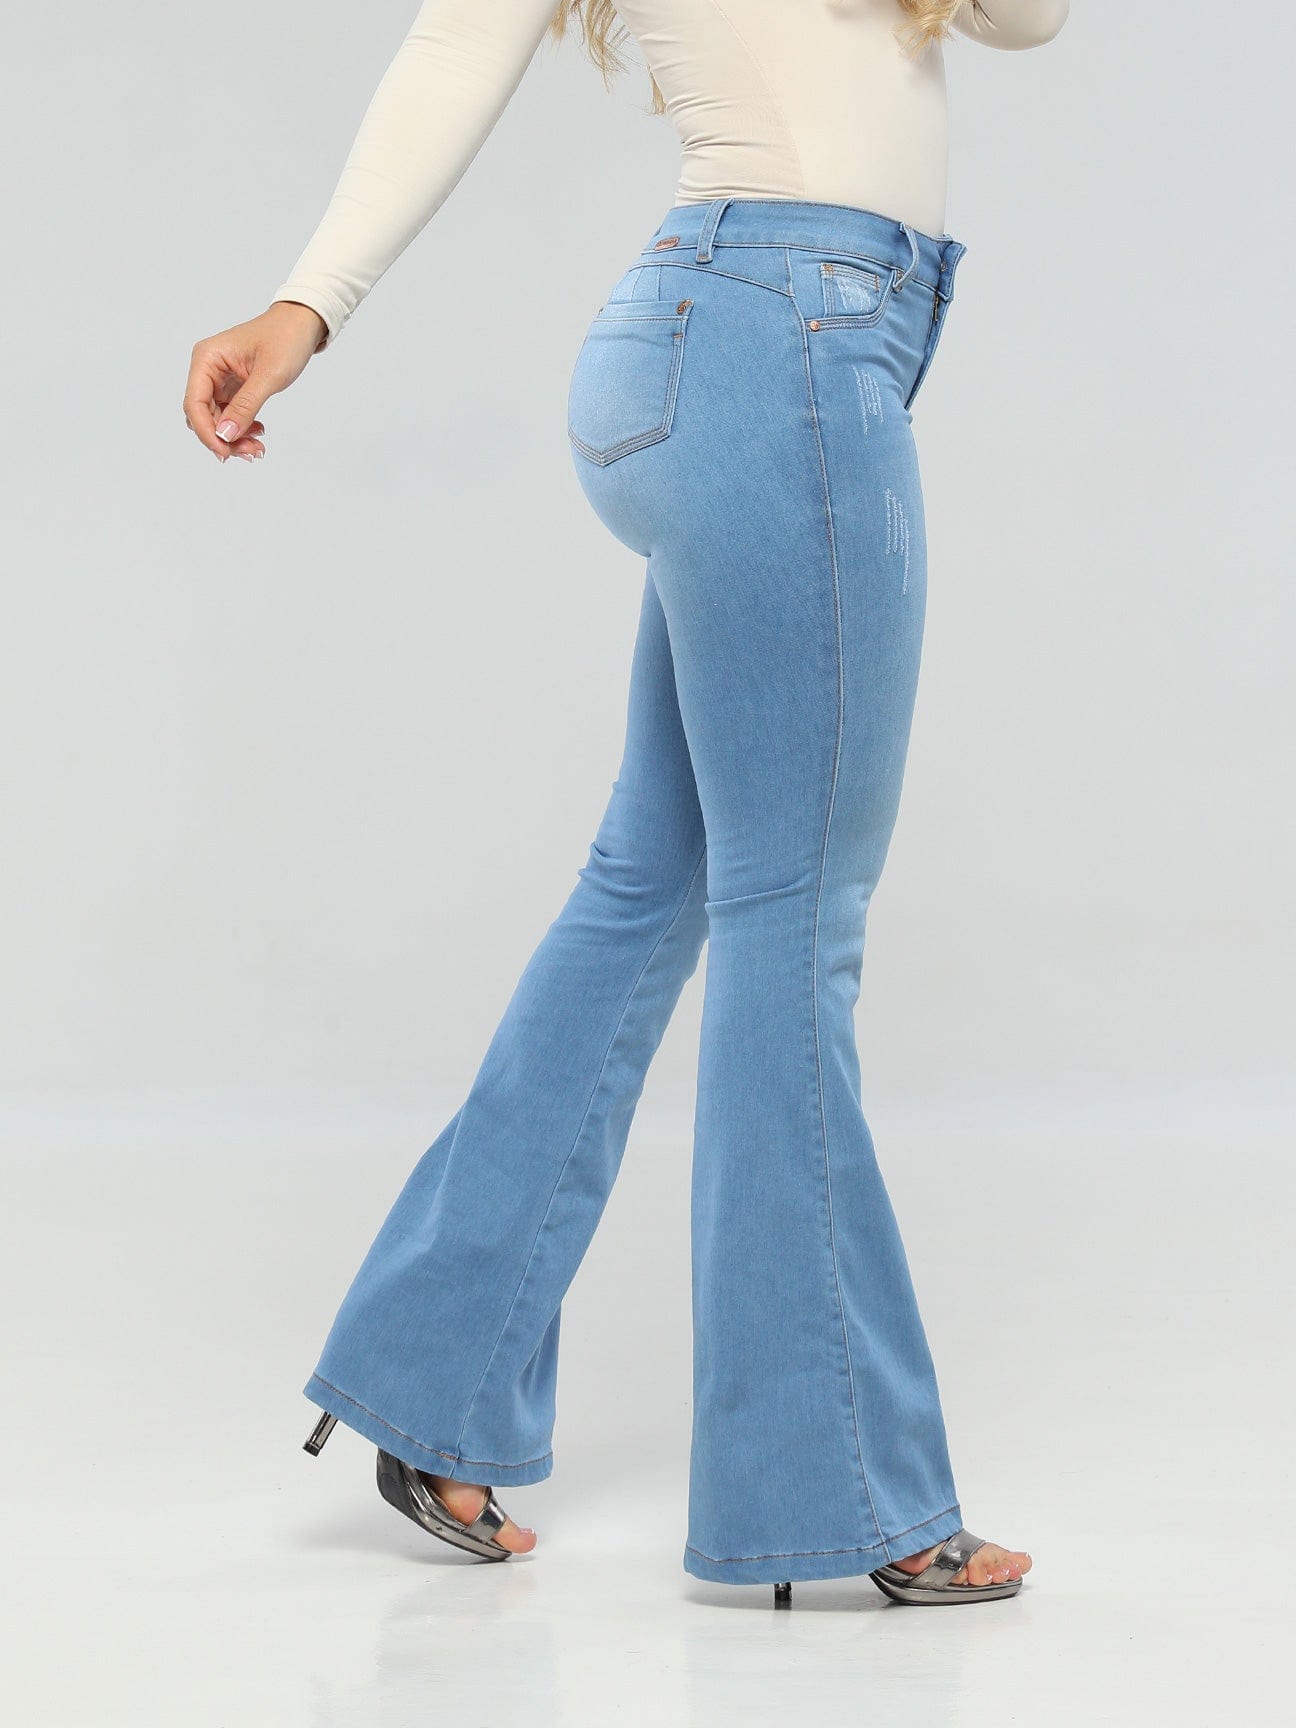 Moda colombiana jeans - Moda colombiana jeans Roxanne